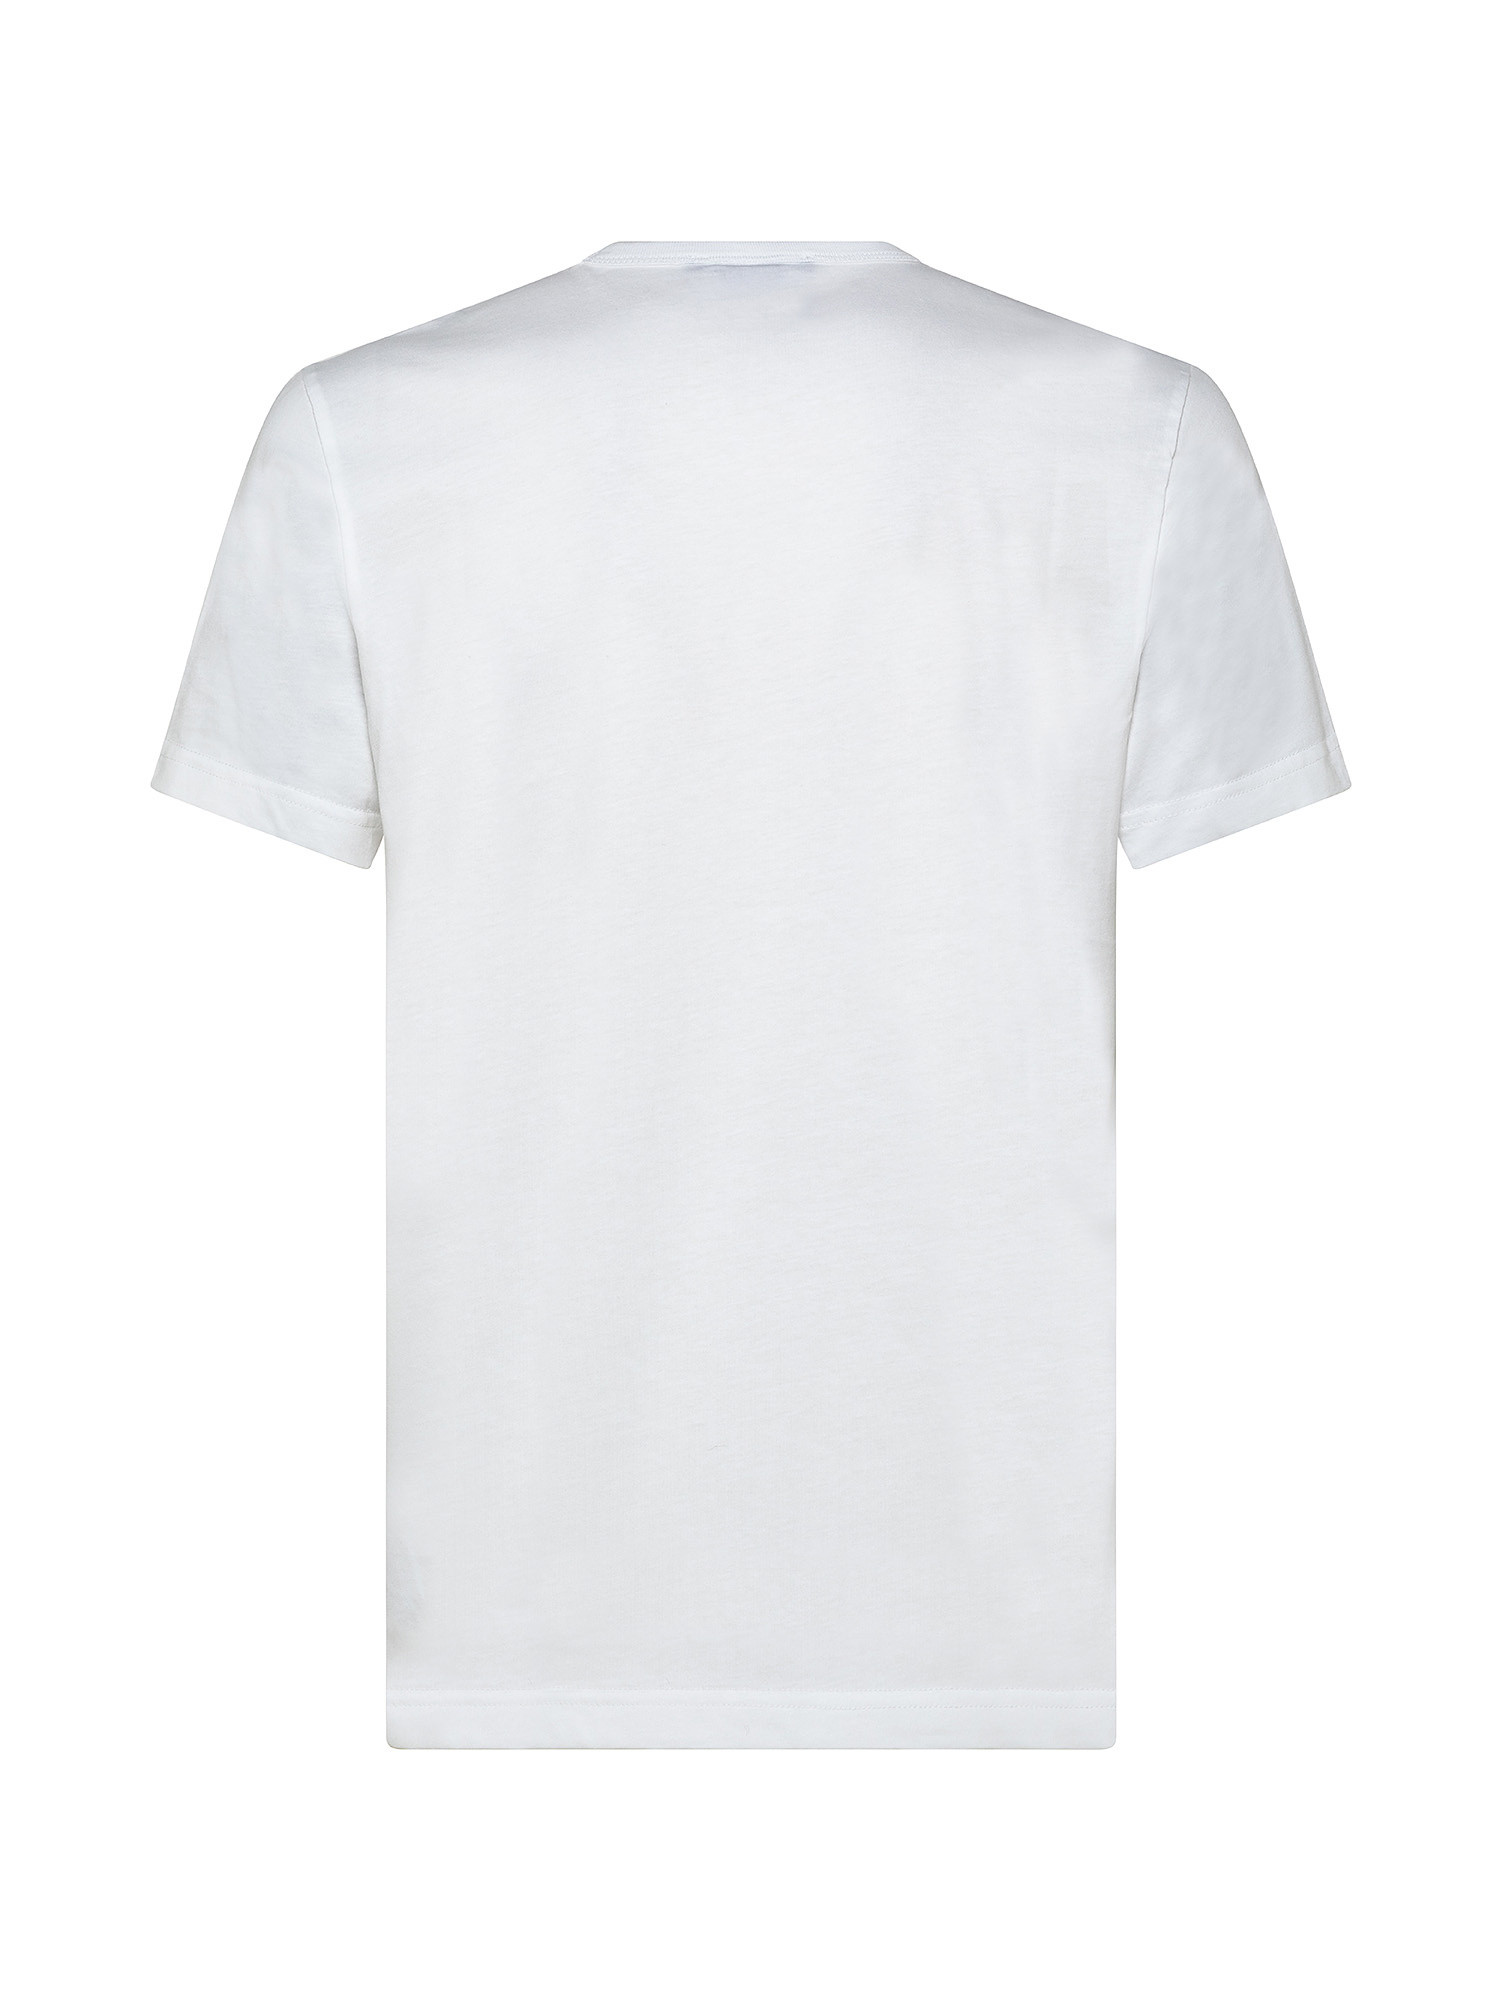 T-shirt manica corta, Bianco, large